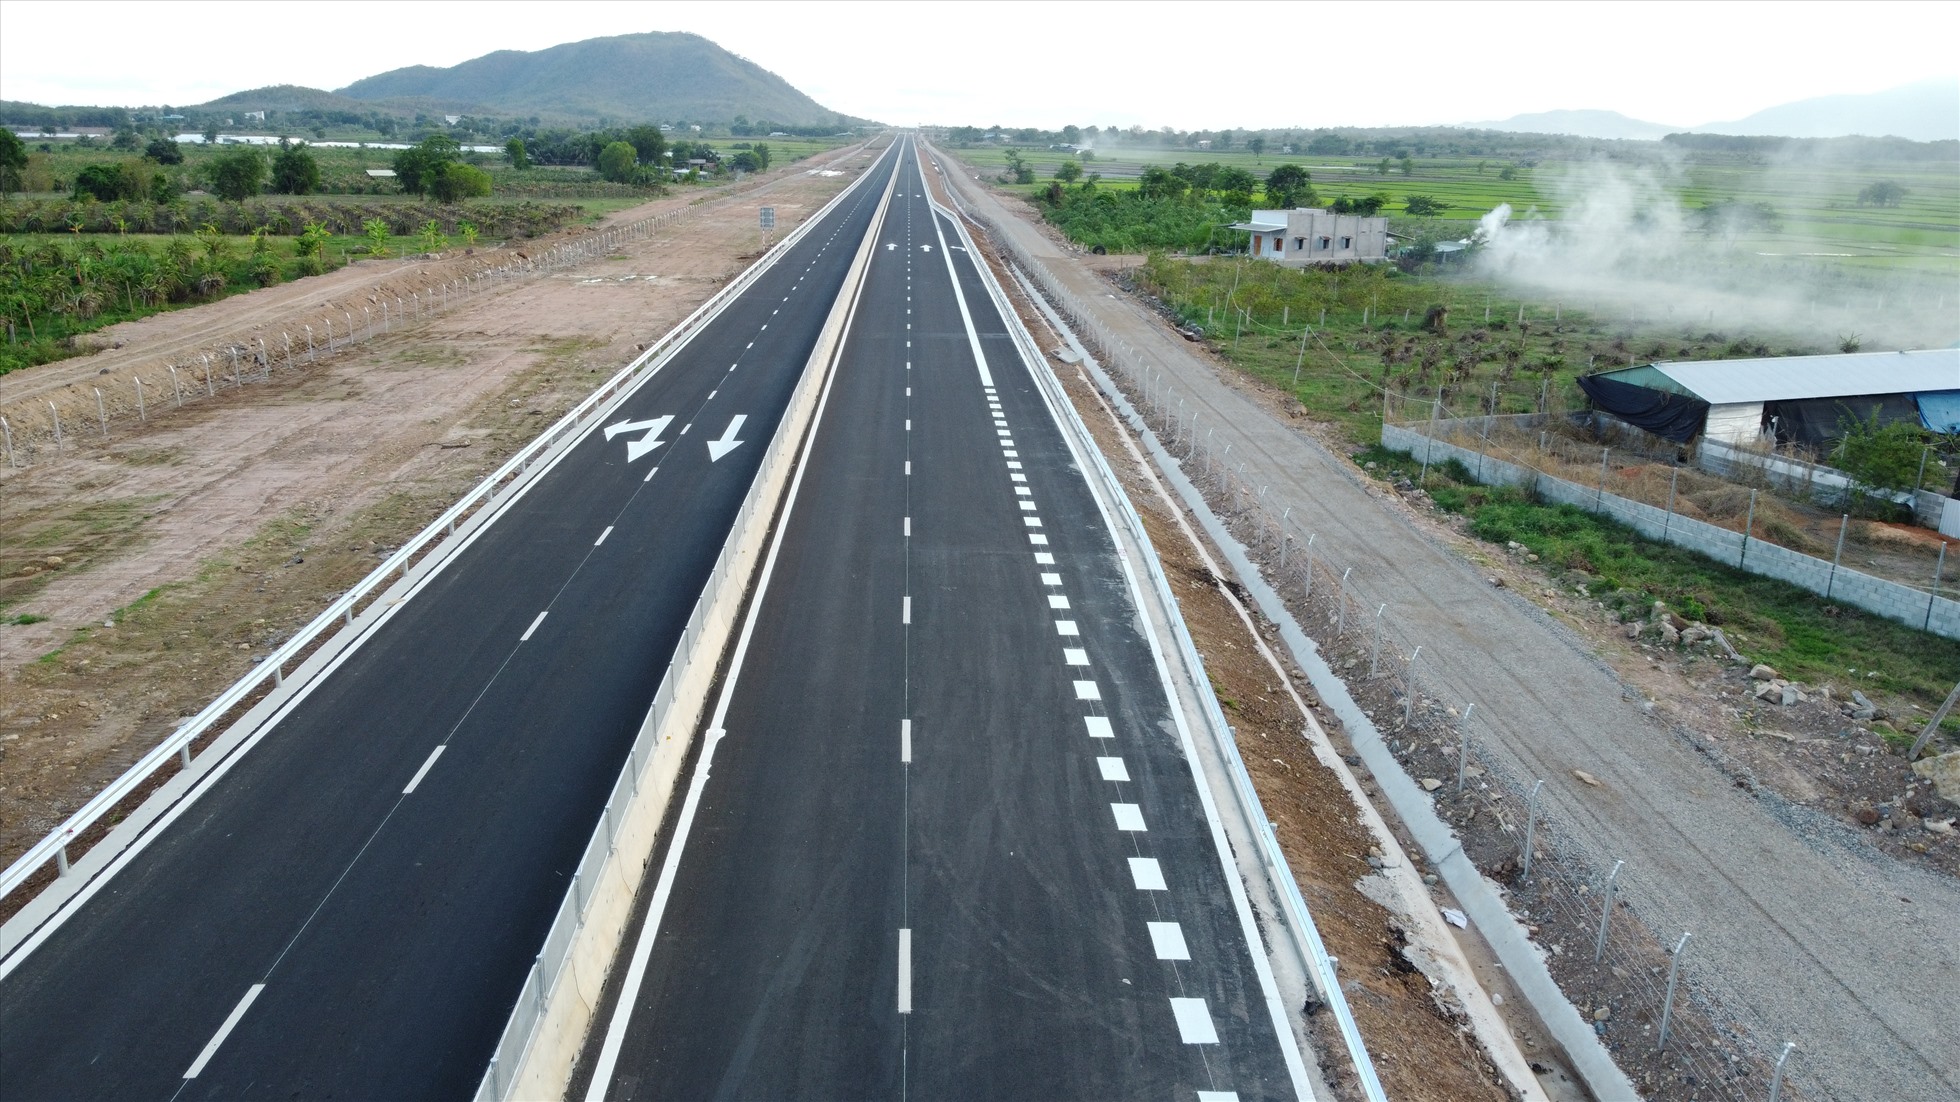 Theo thiết kế, dự án cao tốc Vĩnh Hảo - Phan Thiết giai đoạn 1, được đầu tư quy mô 4 làn xe, bề rộng nền đường 17m, không có làn dừng khẩn cấp.